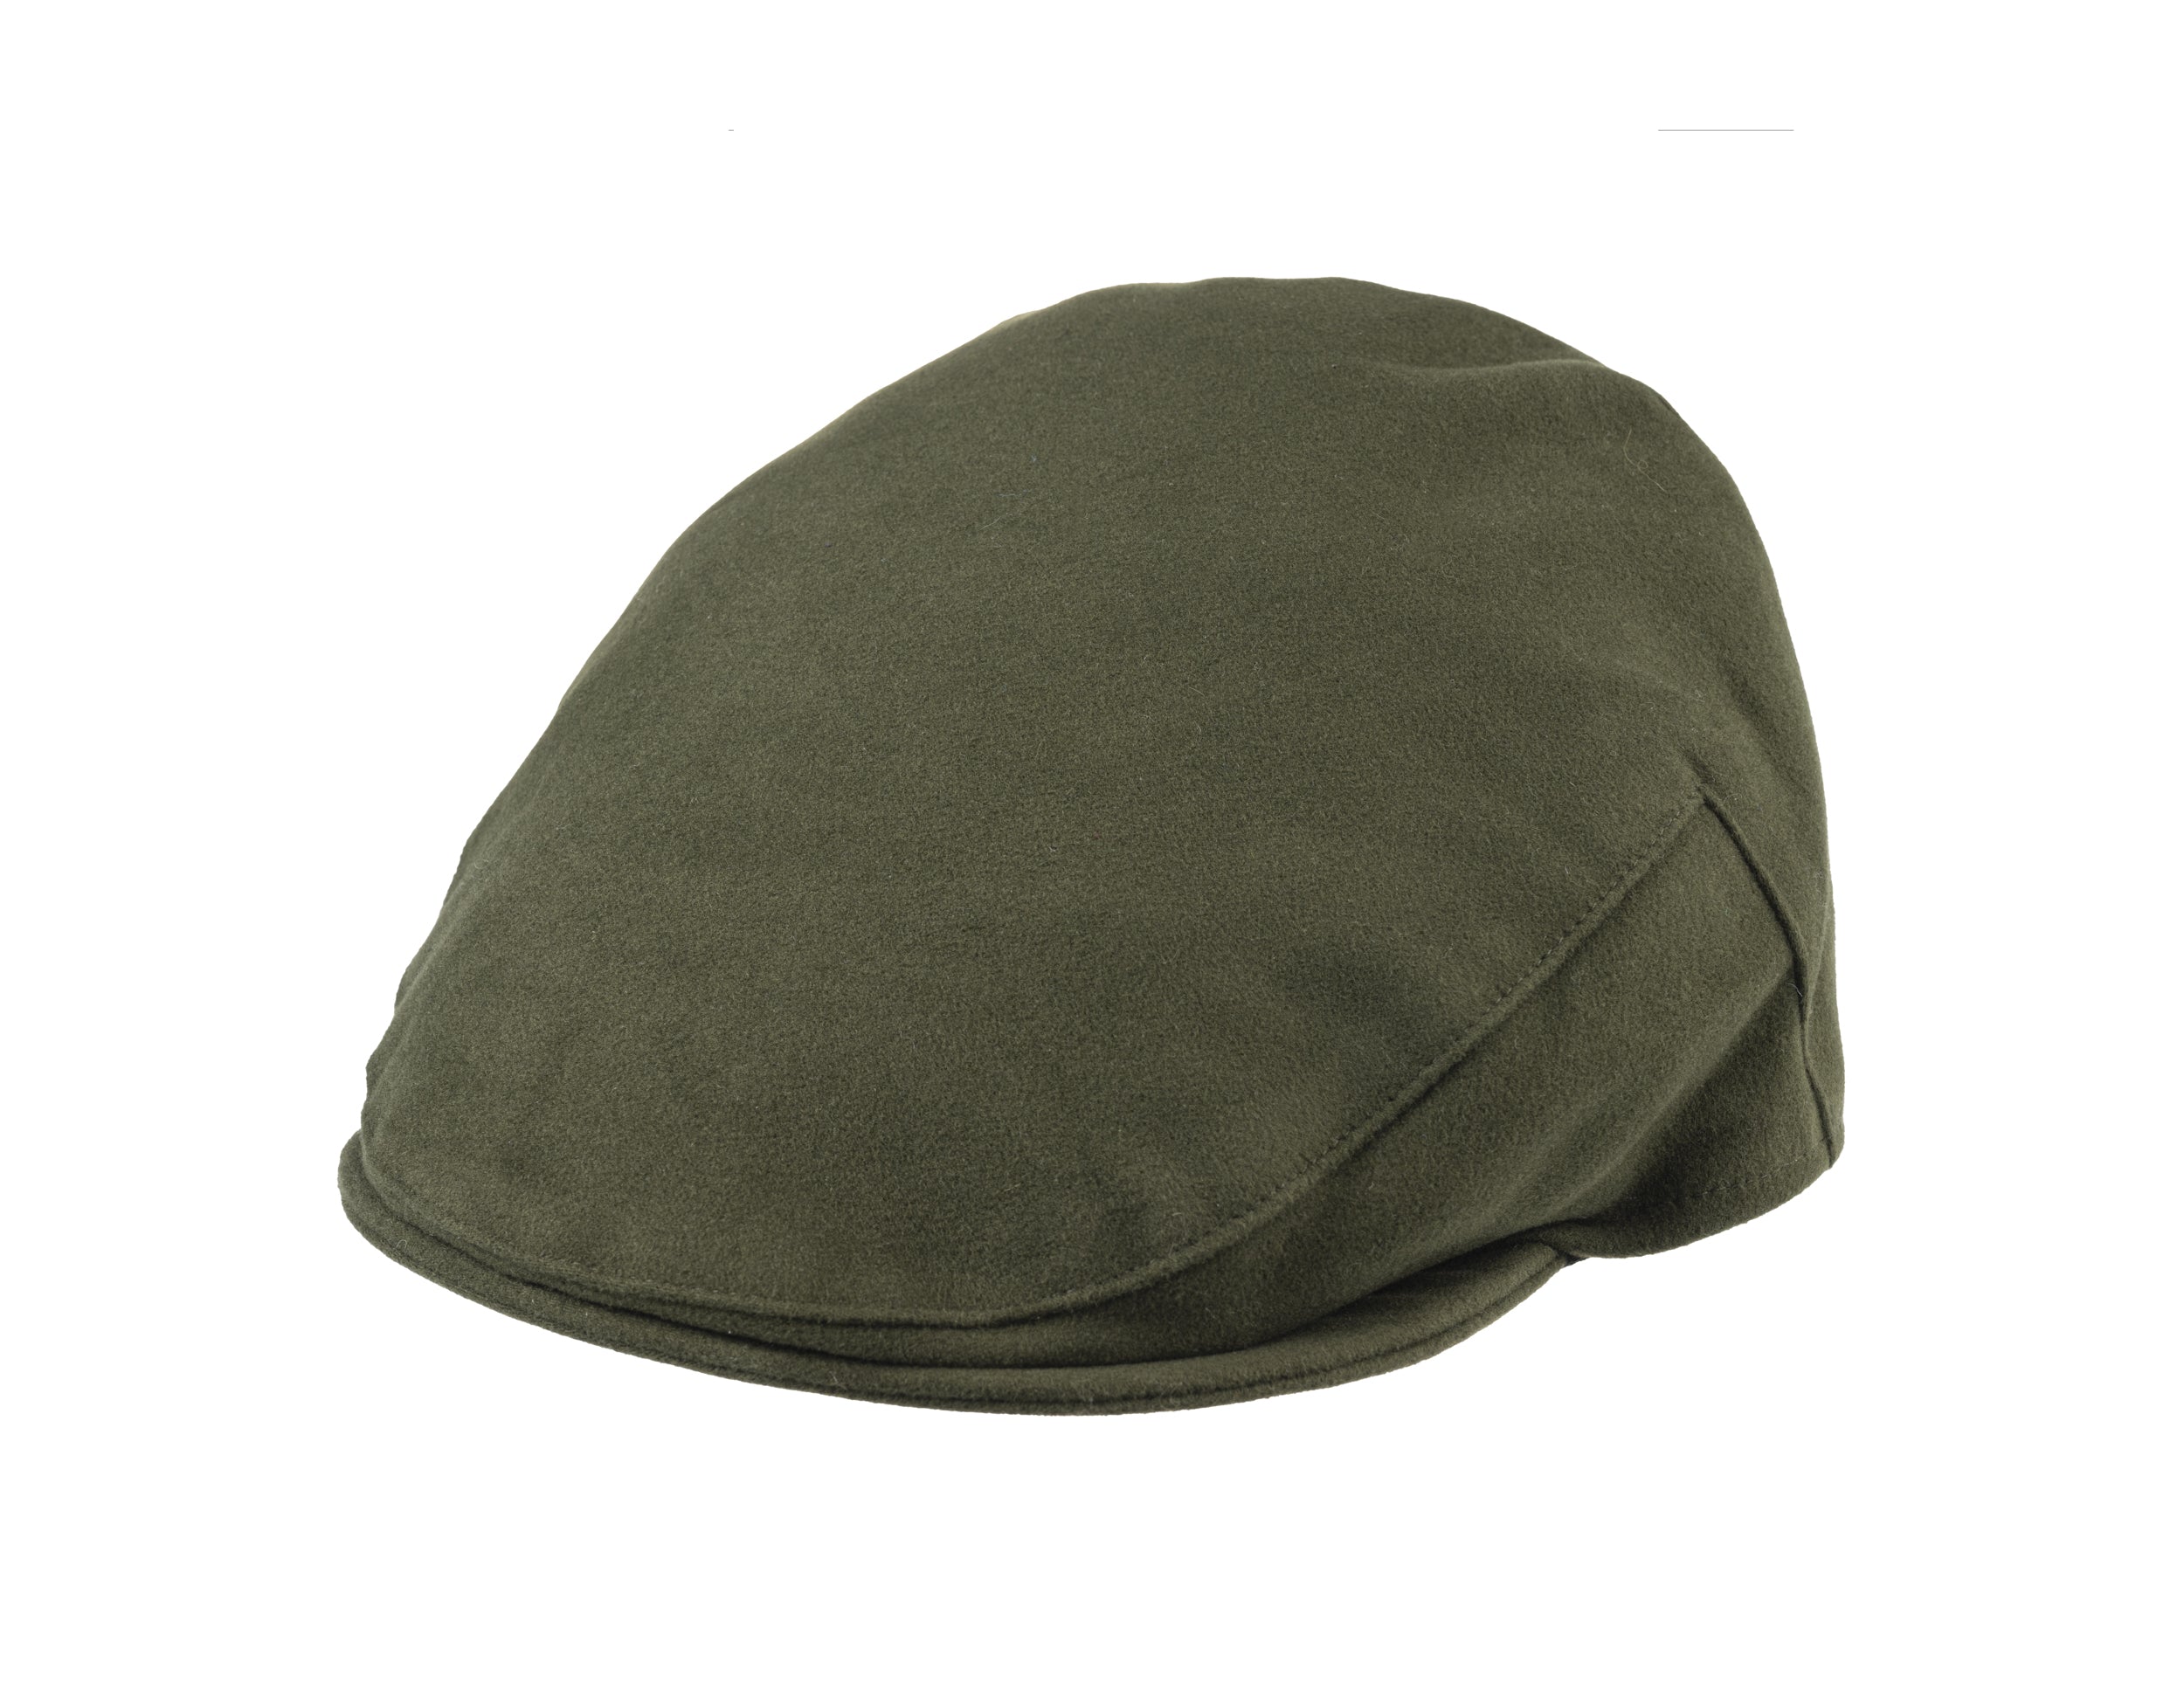 Balmoral moleskin cotton cap in Green